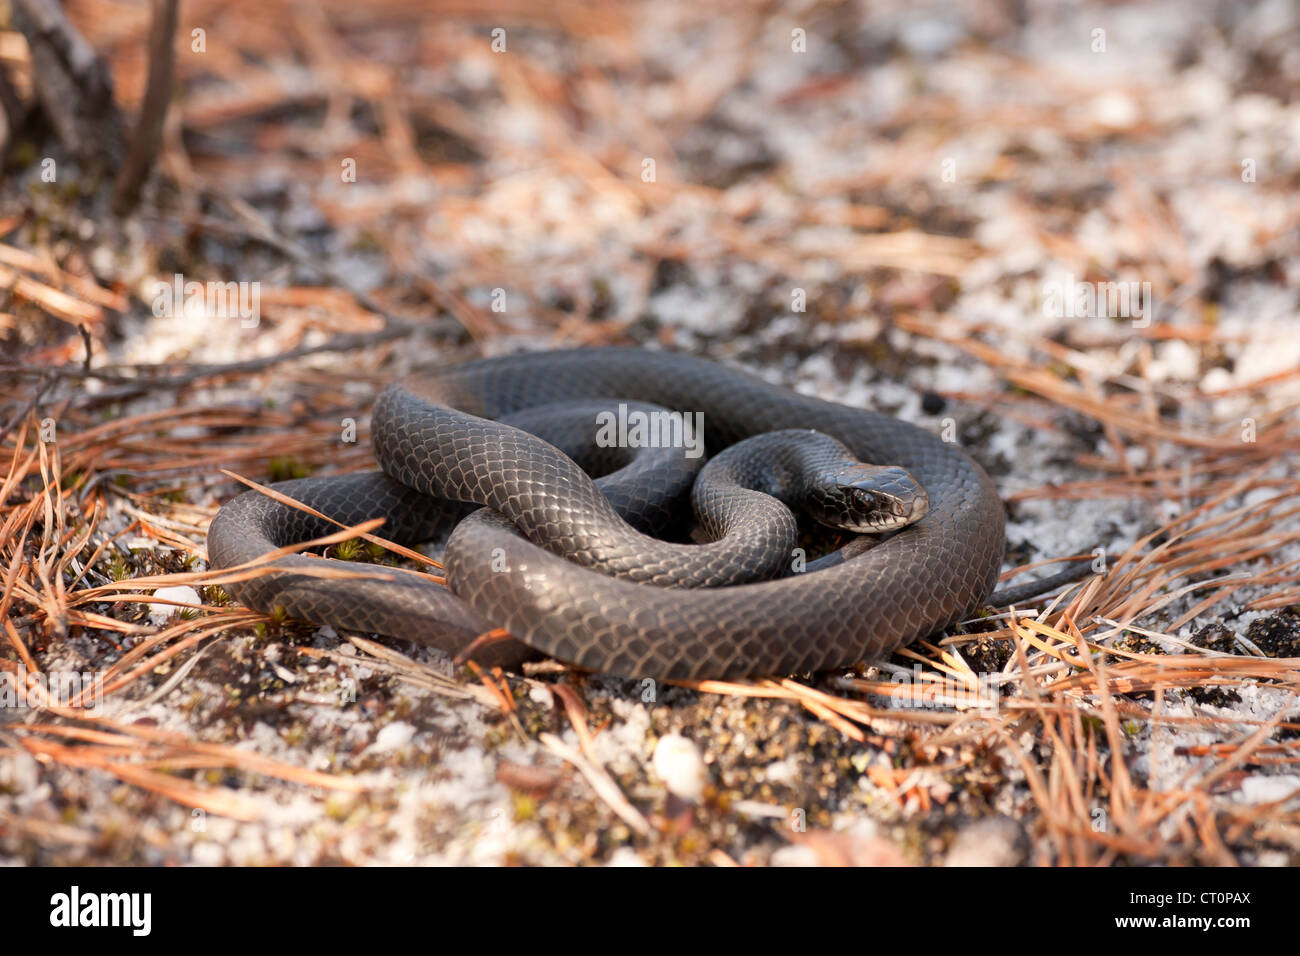 Joven negra norte racer (Coluber constrictor) serpiente c. Foto de stock